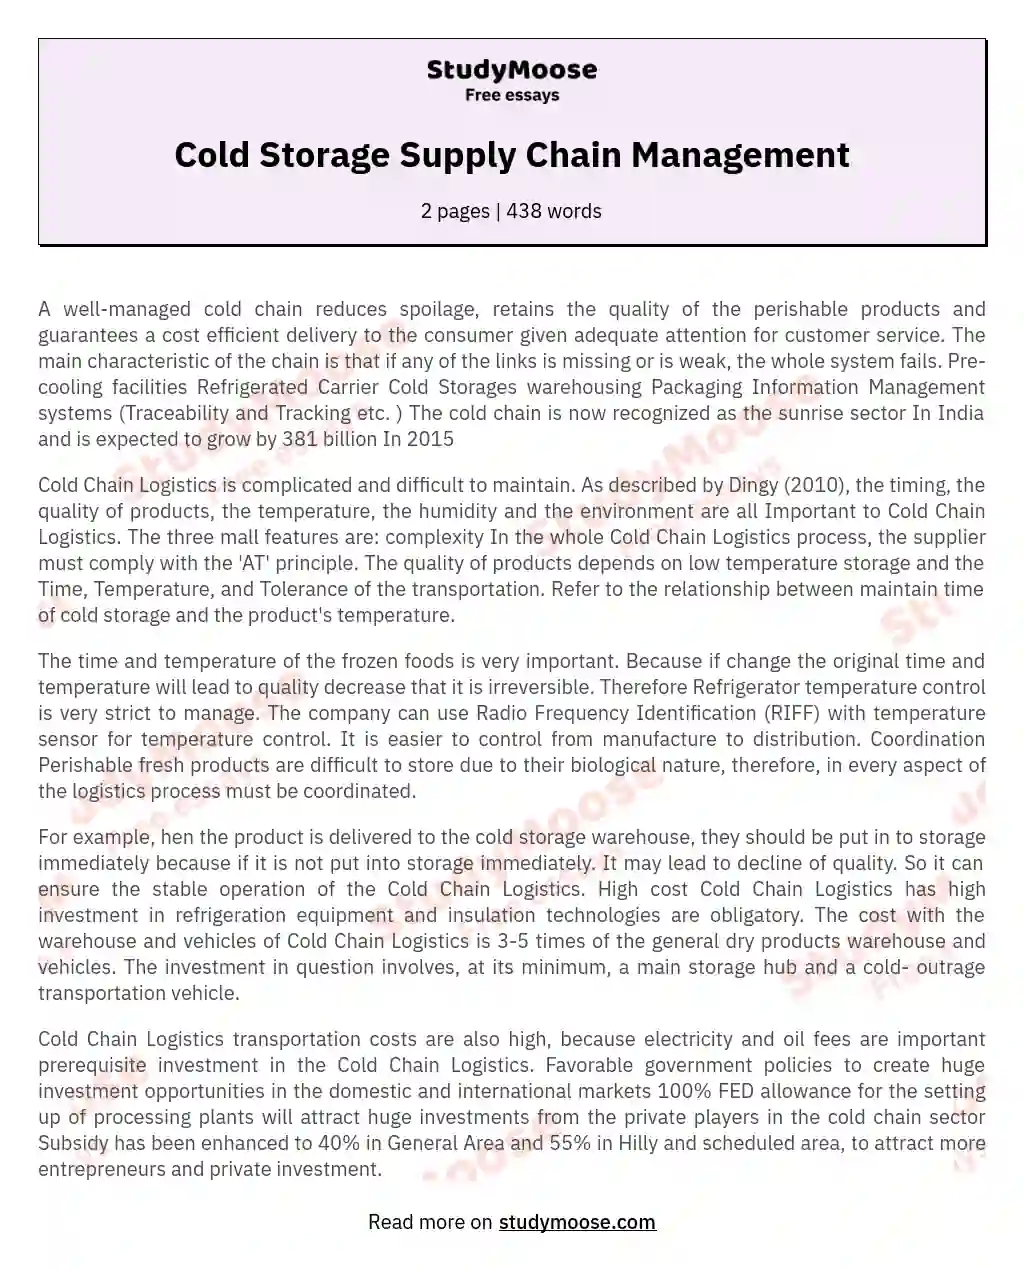 Cold Storage Supply Chain Management essay